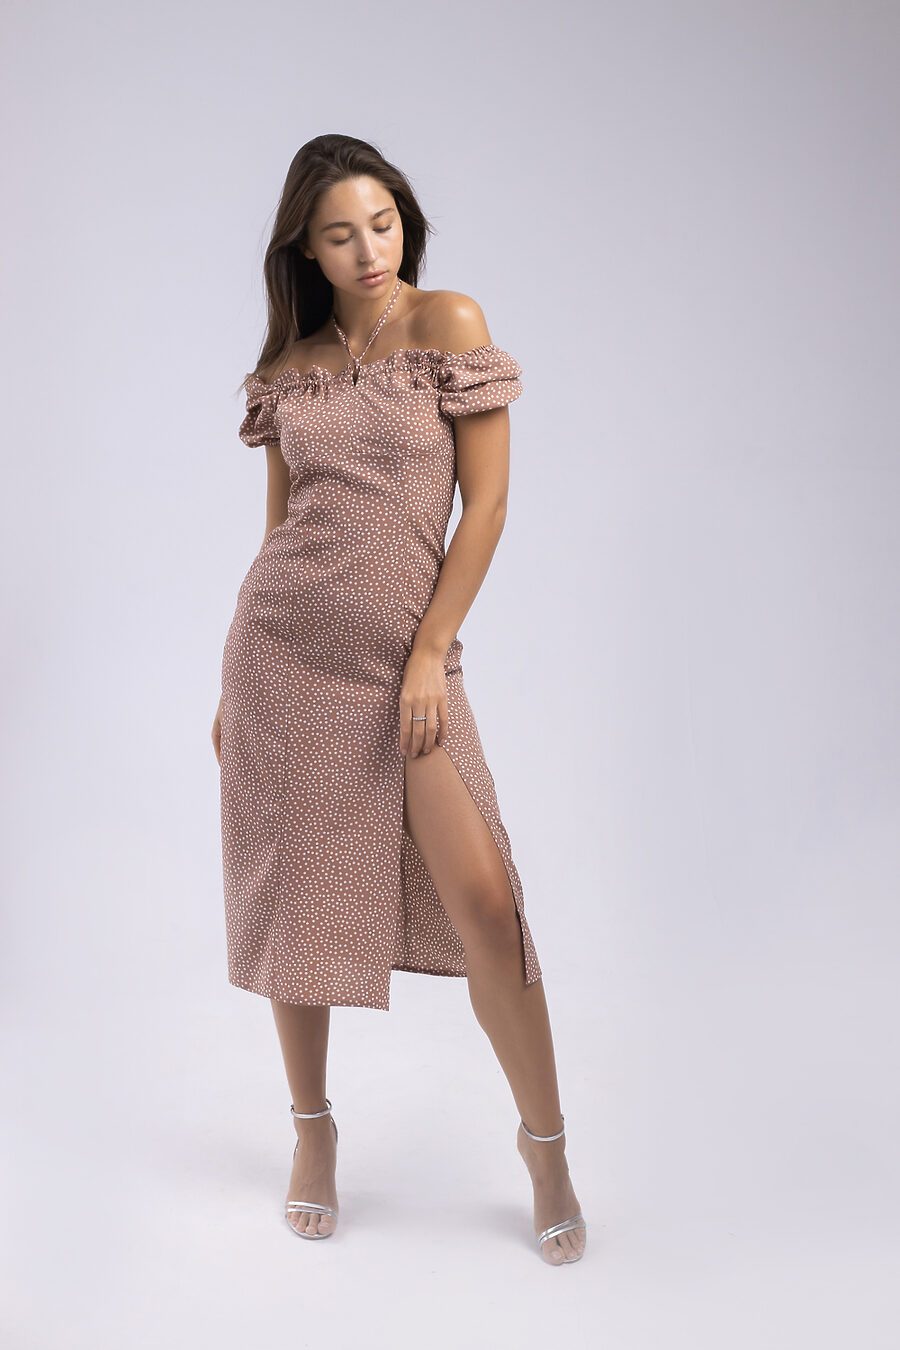 Платье В-36 для женщин НАТАЛИ 785192 купить оптом от производителя. Совместная покупка женской одежды в OptMoyo